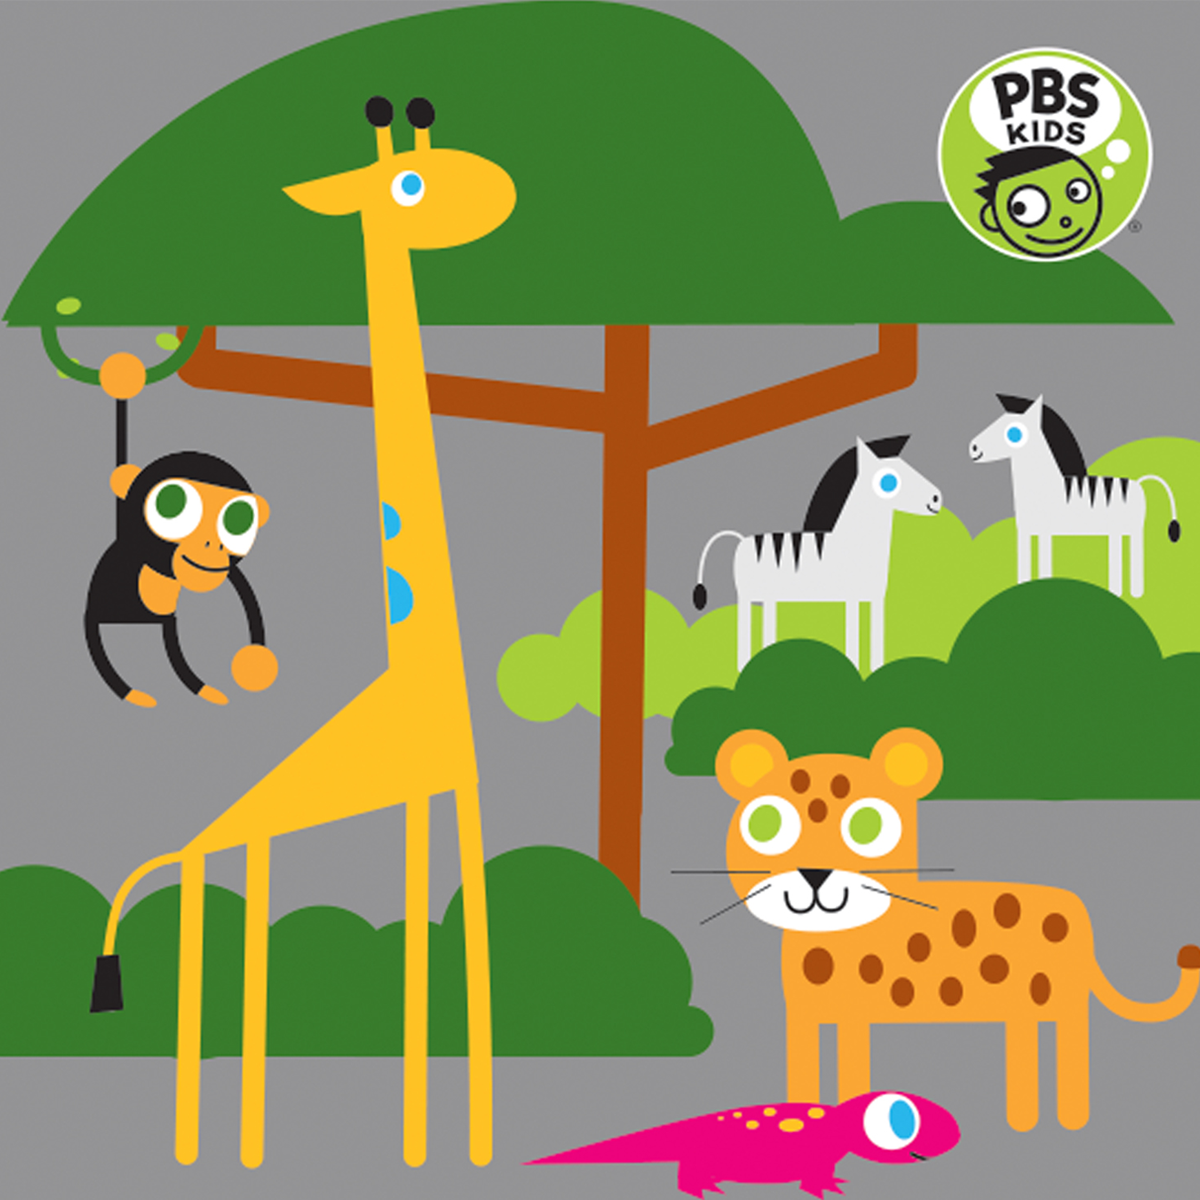 PBS KIDS "SAFARI PARTY" KINDERMAT SHEETS